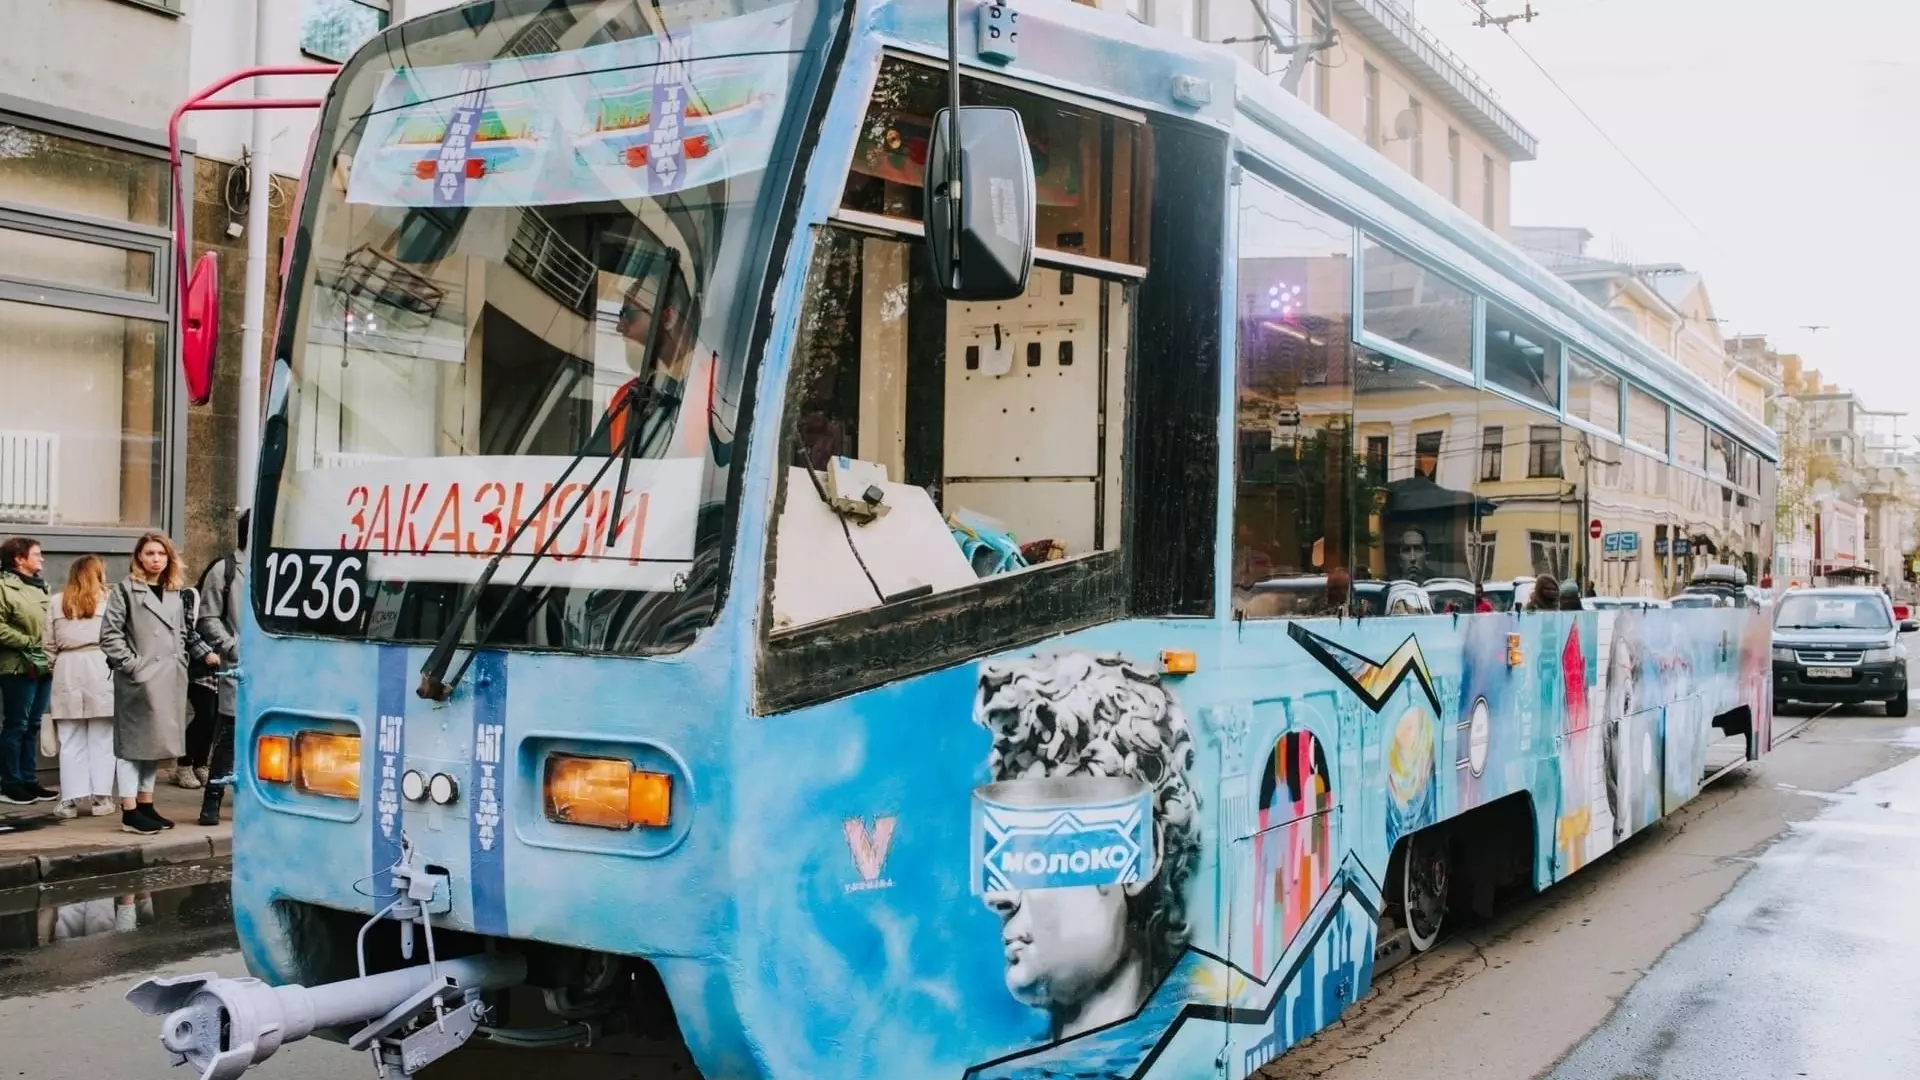 Восстановленный арт-трамвай планируют запустить по Нижнего Новгороду в мае